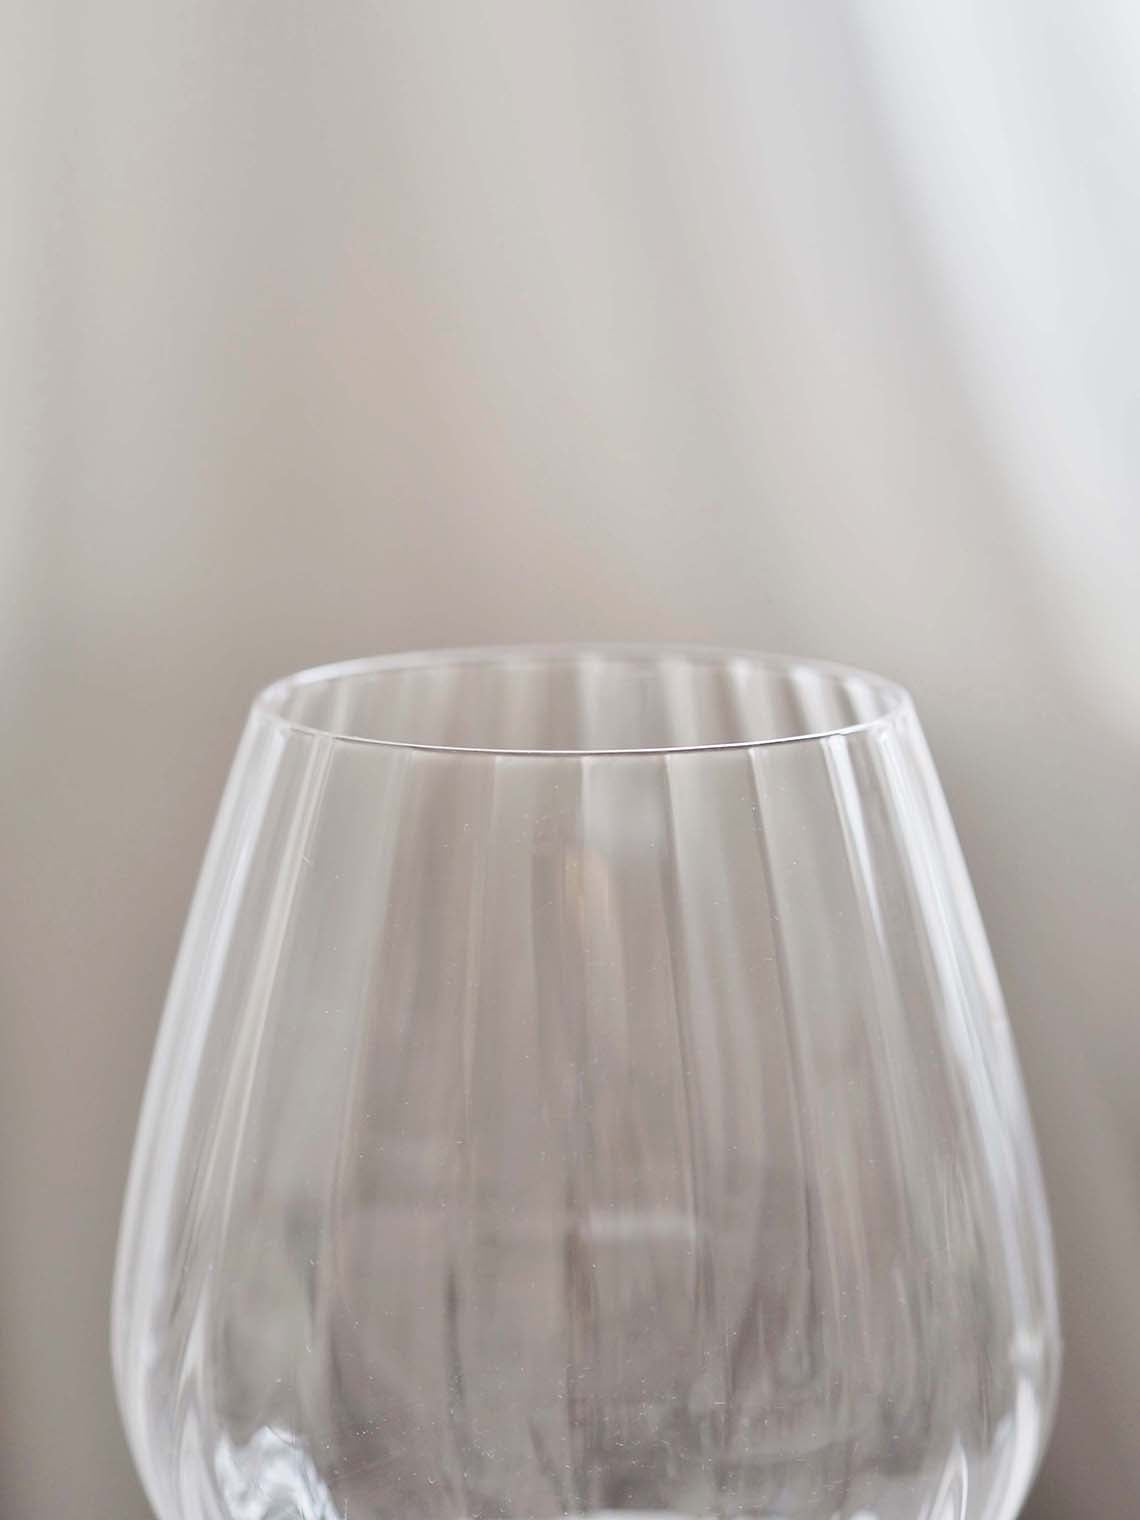 Sparkle Wine Glass (set of 2)